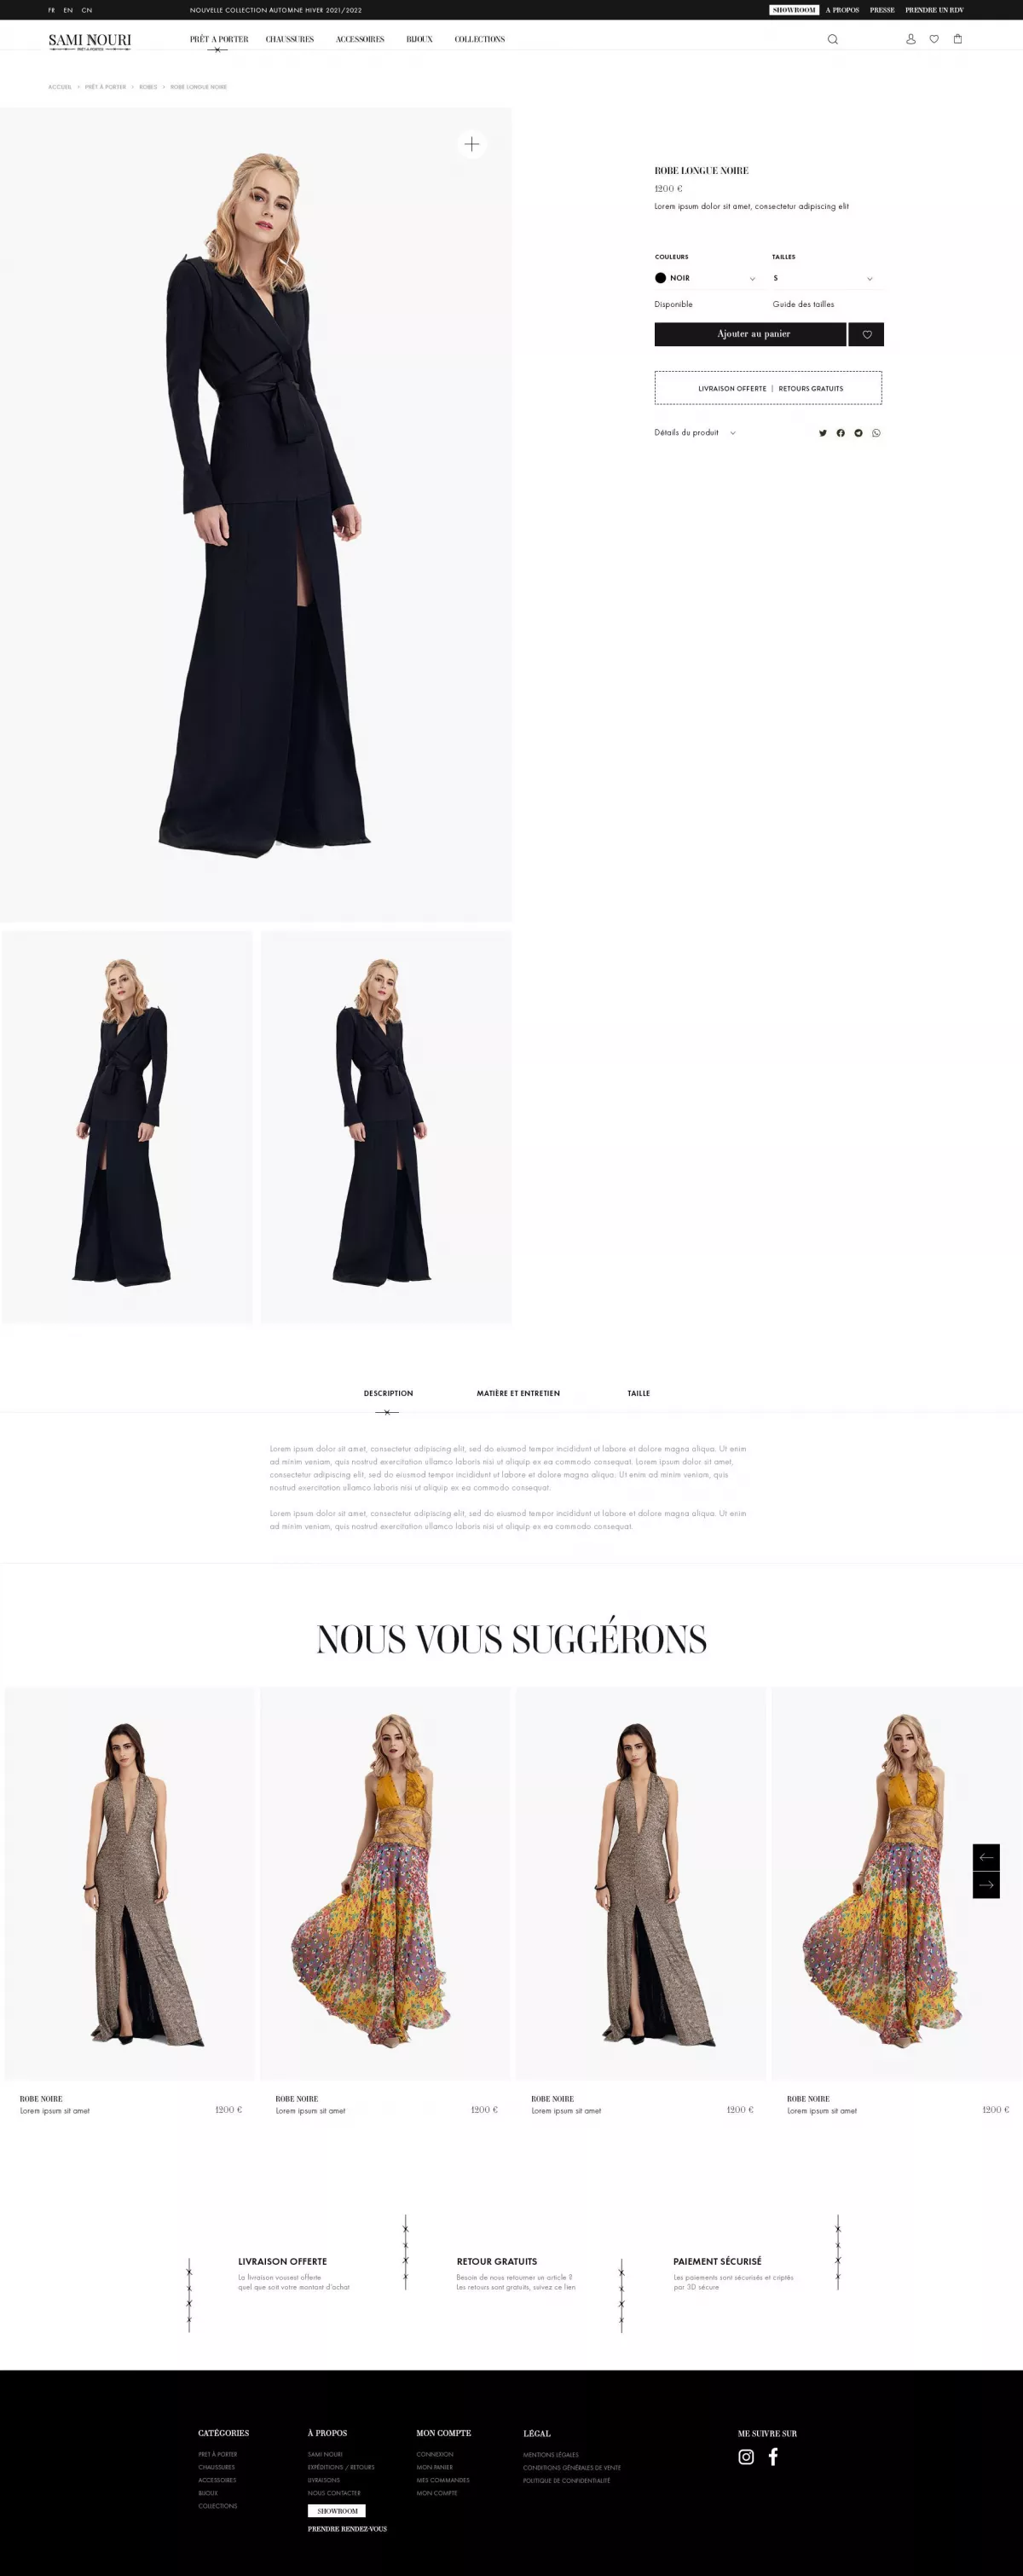 Création site ecommerce Créateur de mode Sami Nouri